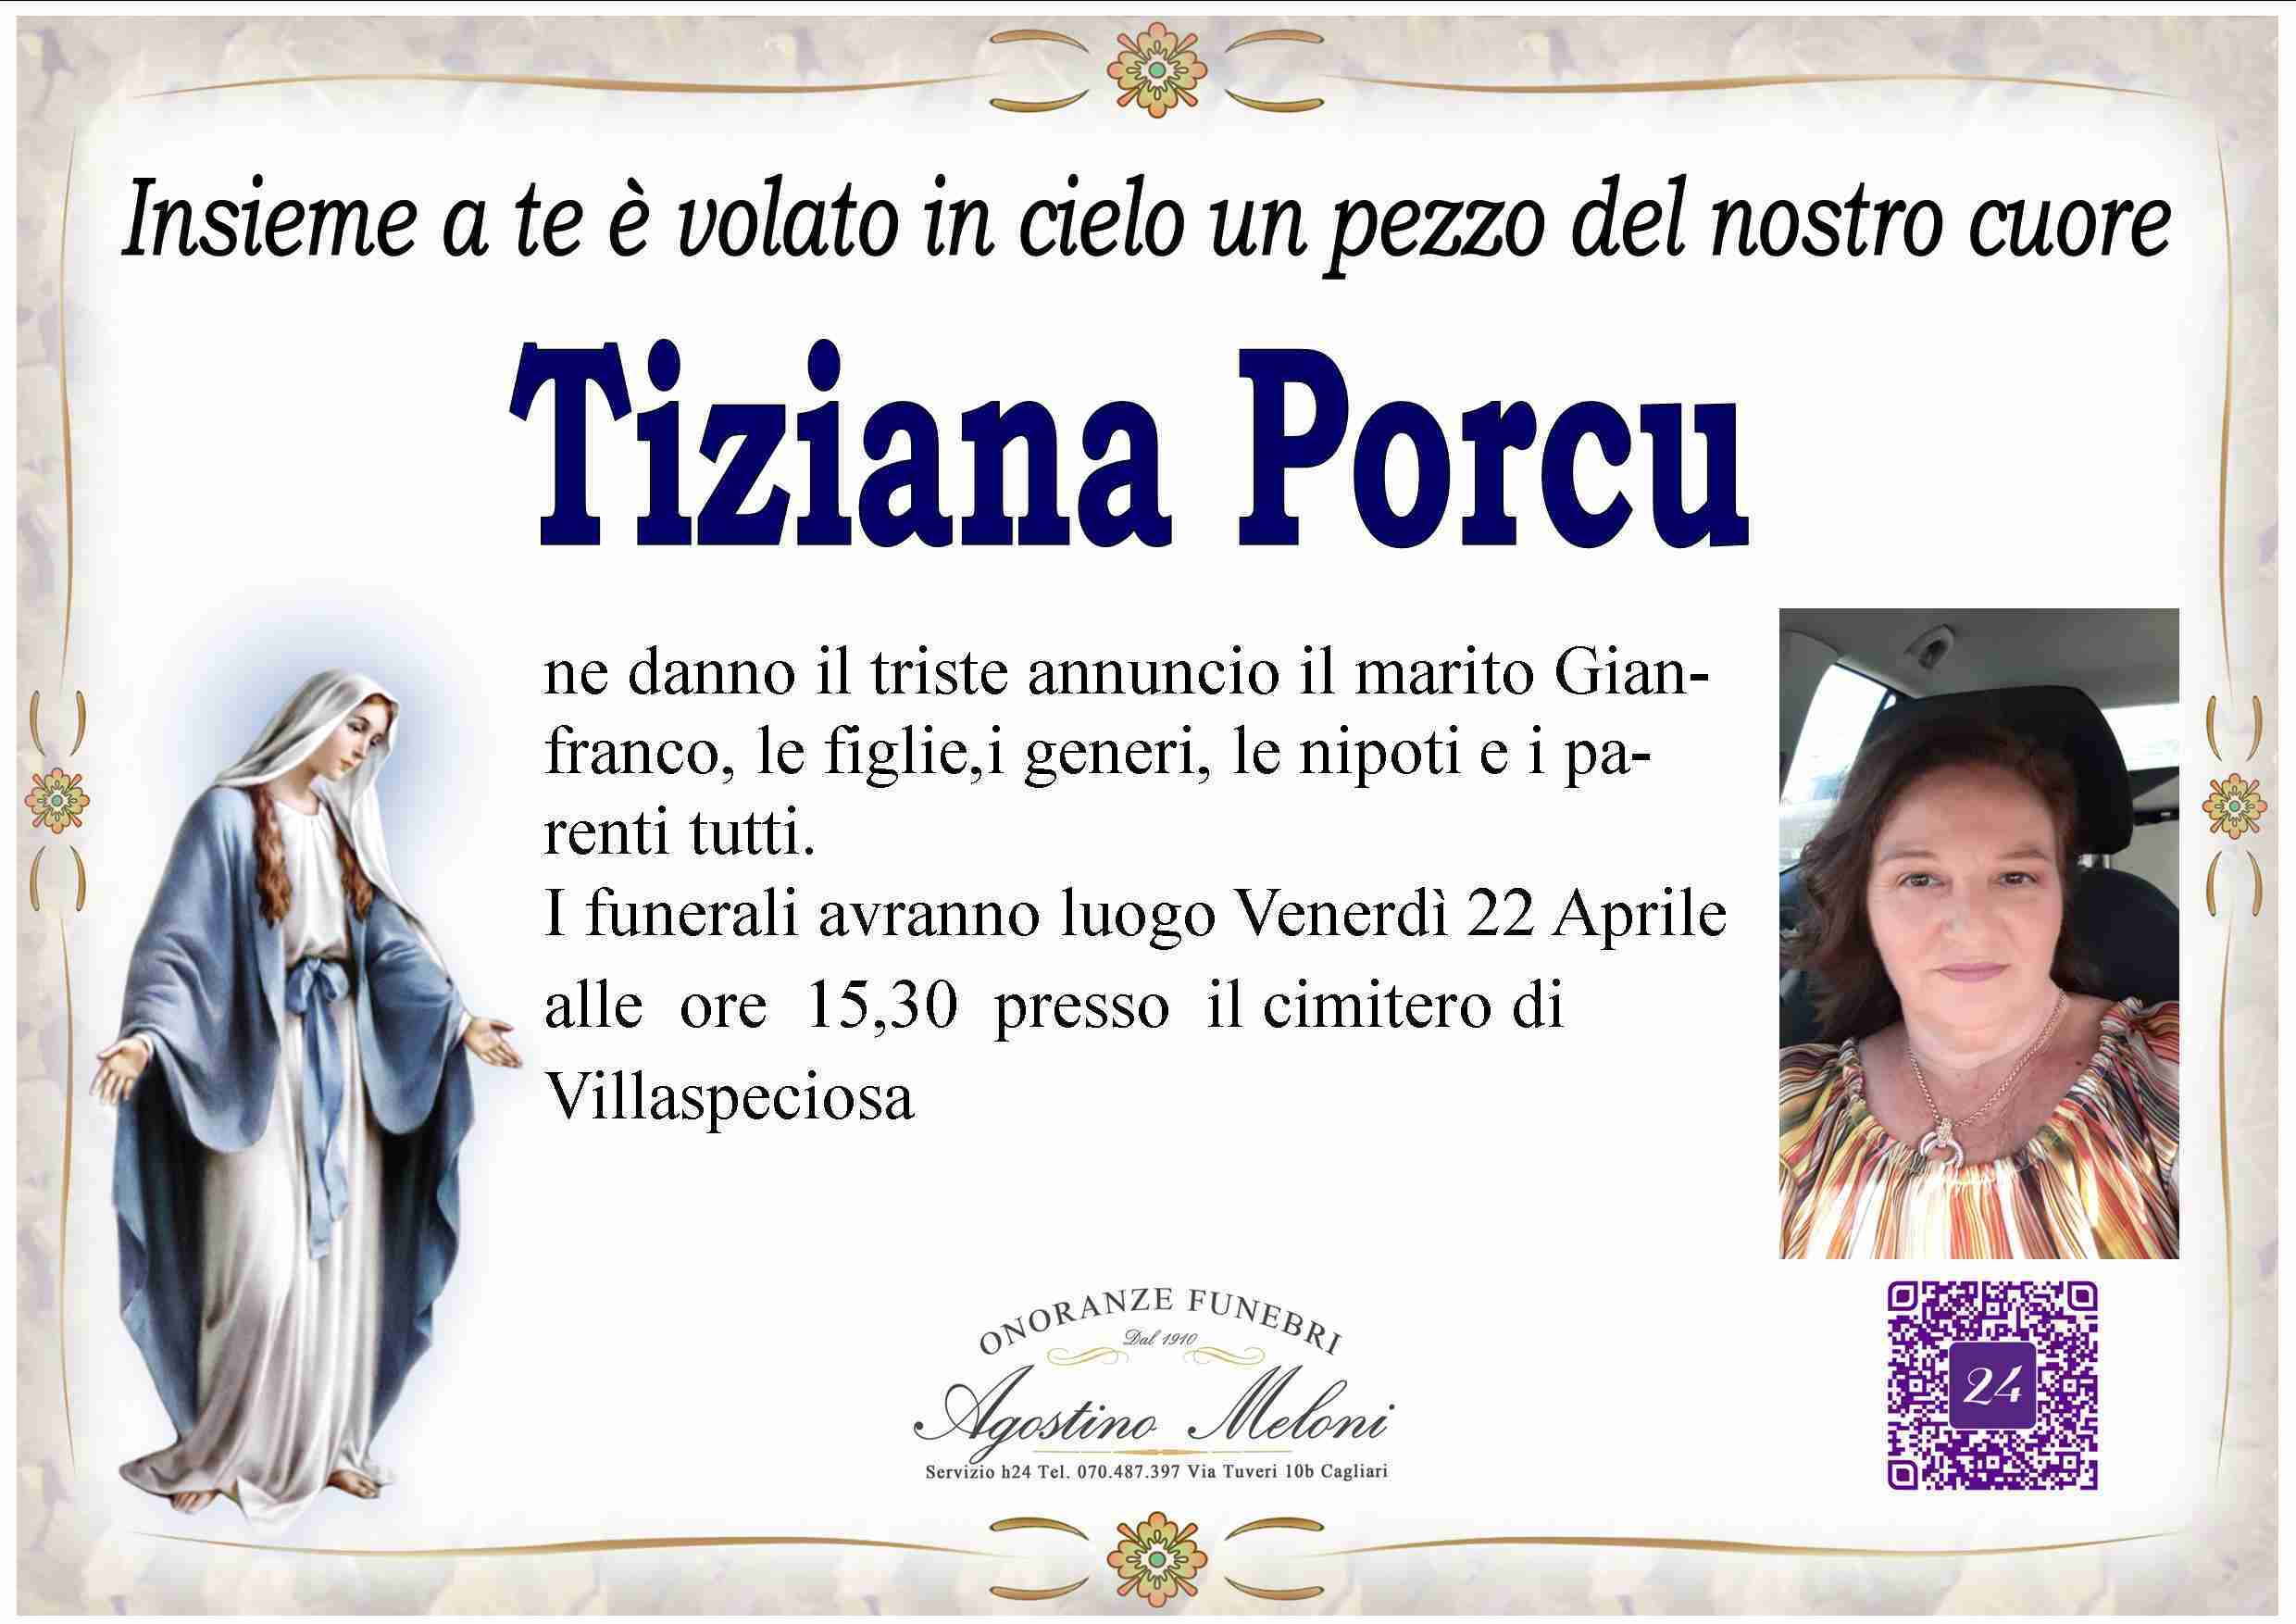 Tiziana Porcu